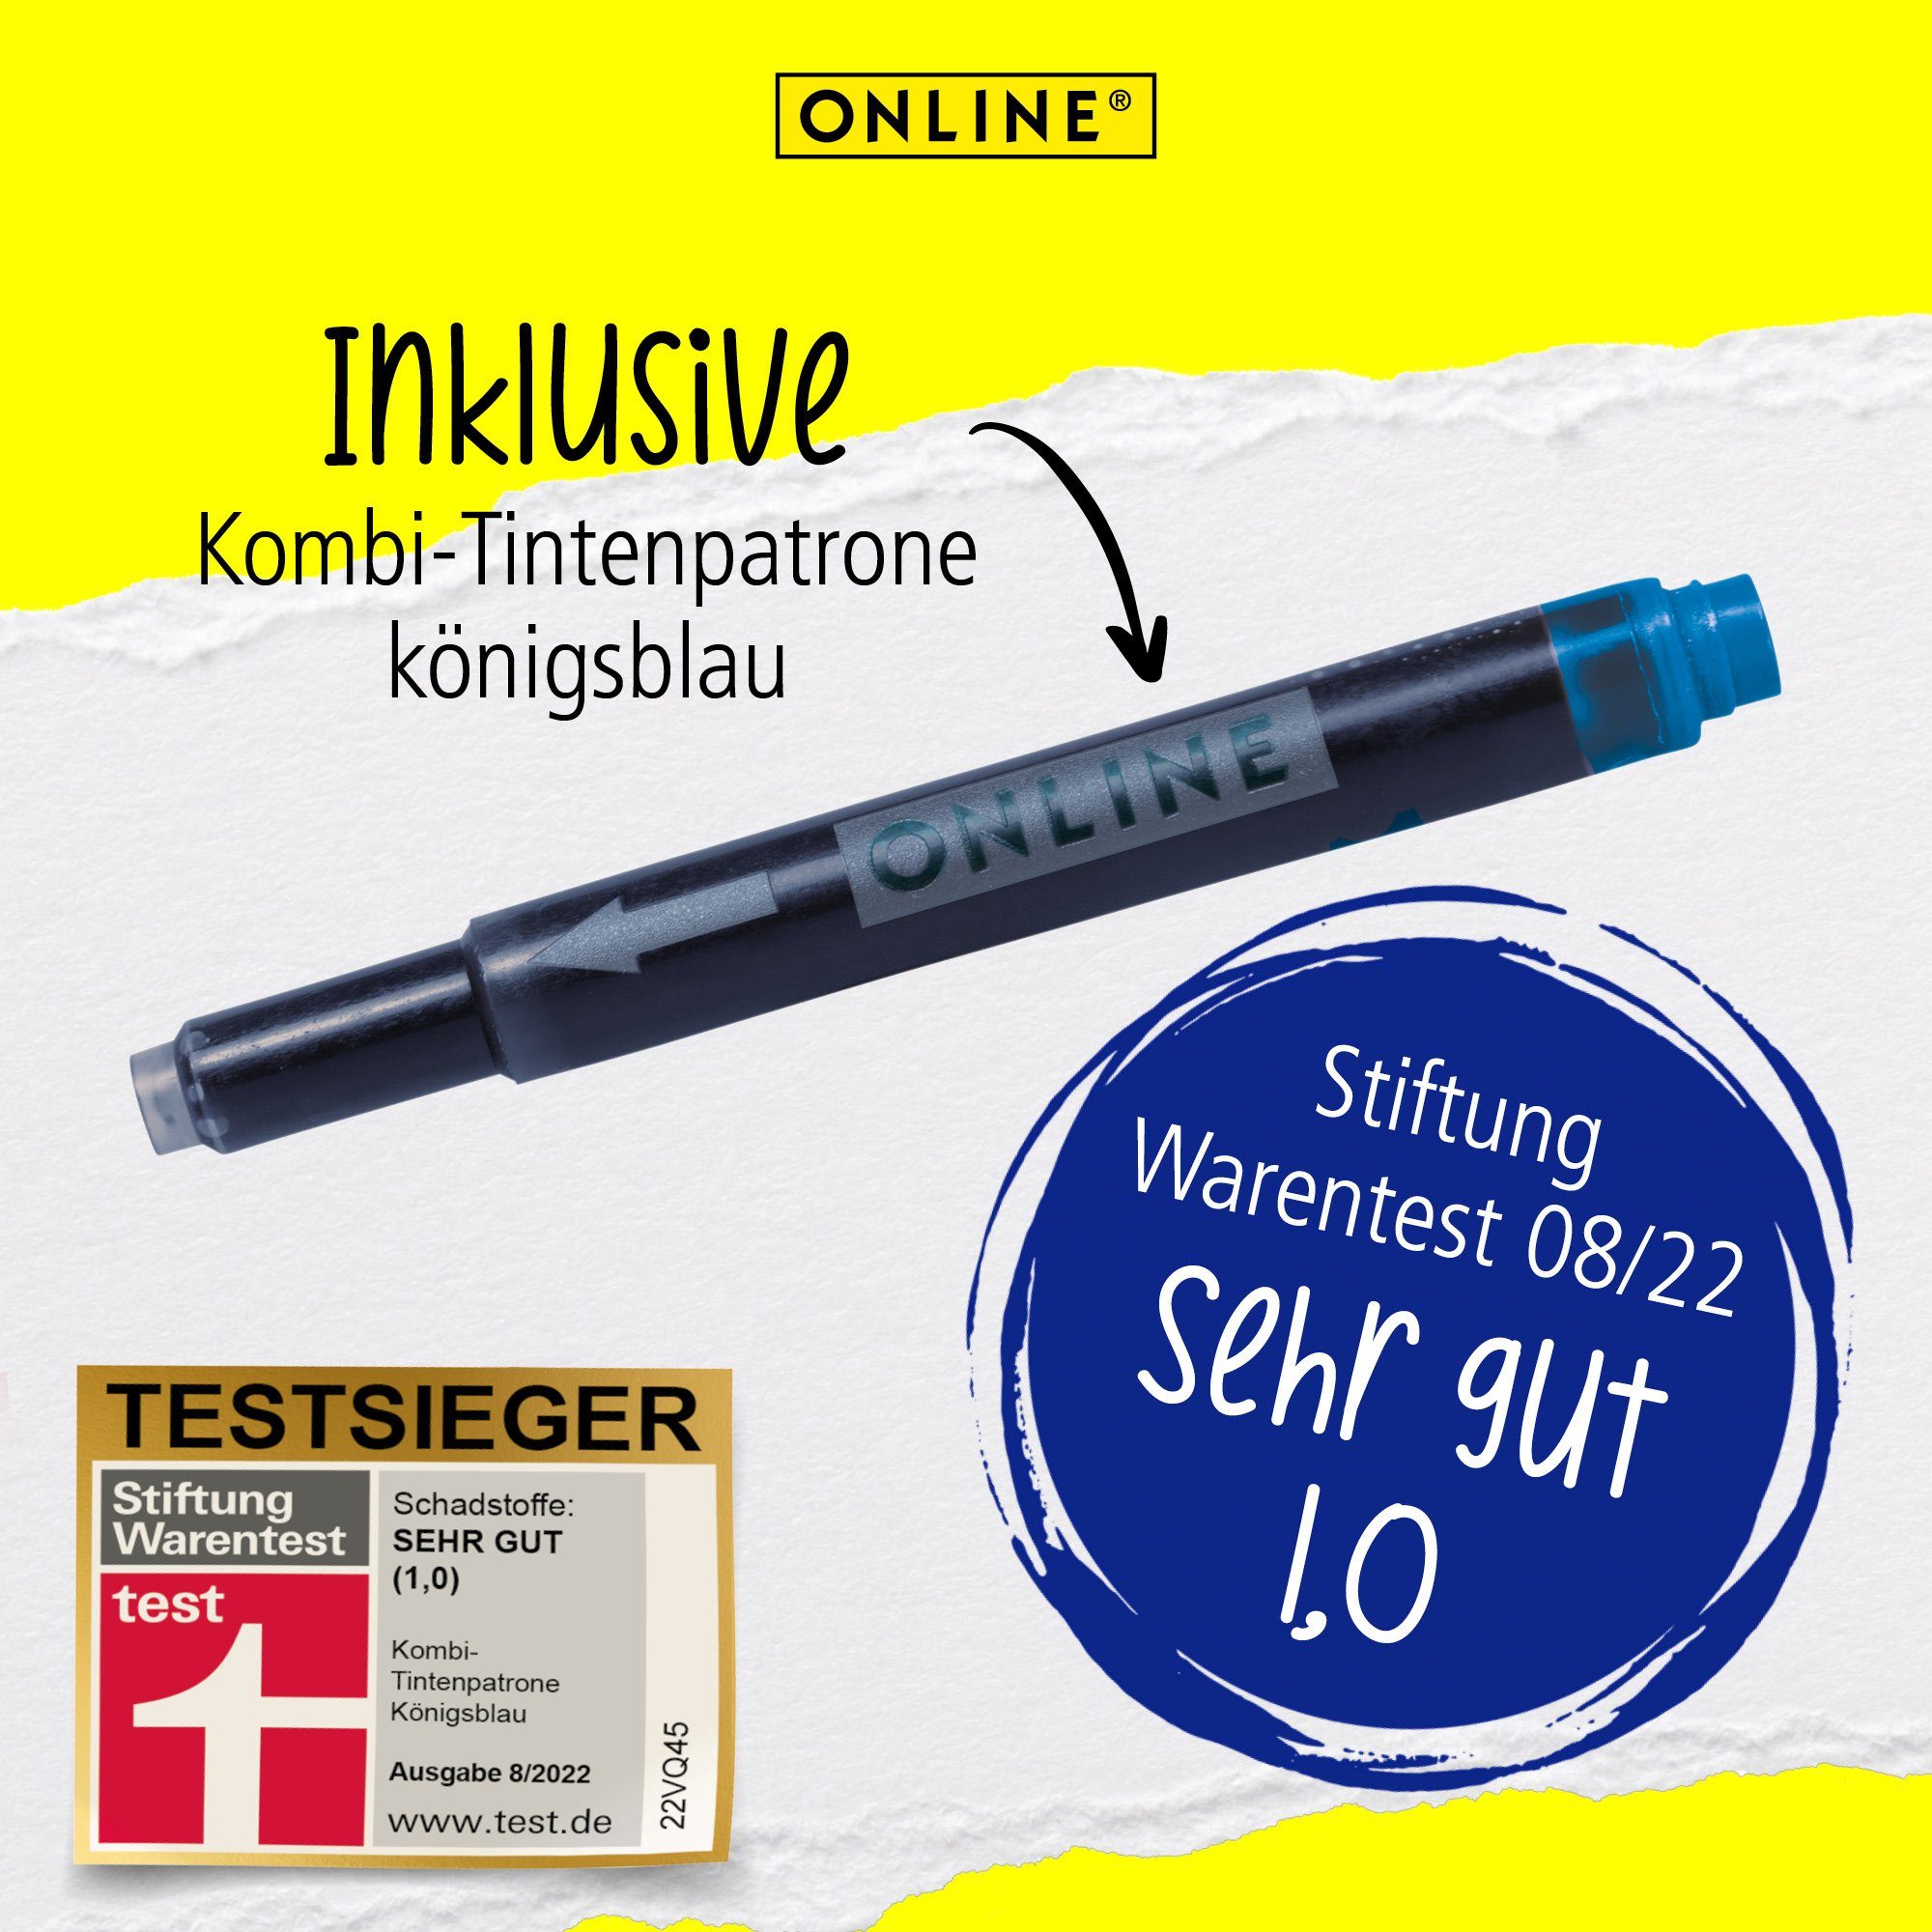 Online Pen Schule, mit Stylus-Tip ideal für die Switch ergonomisch, Füller Plus, Silber